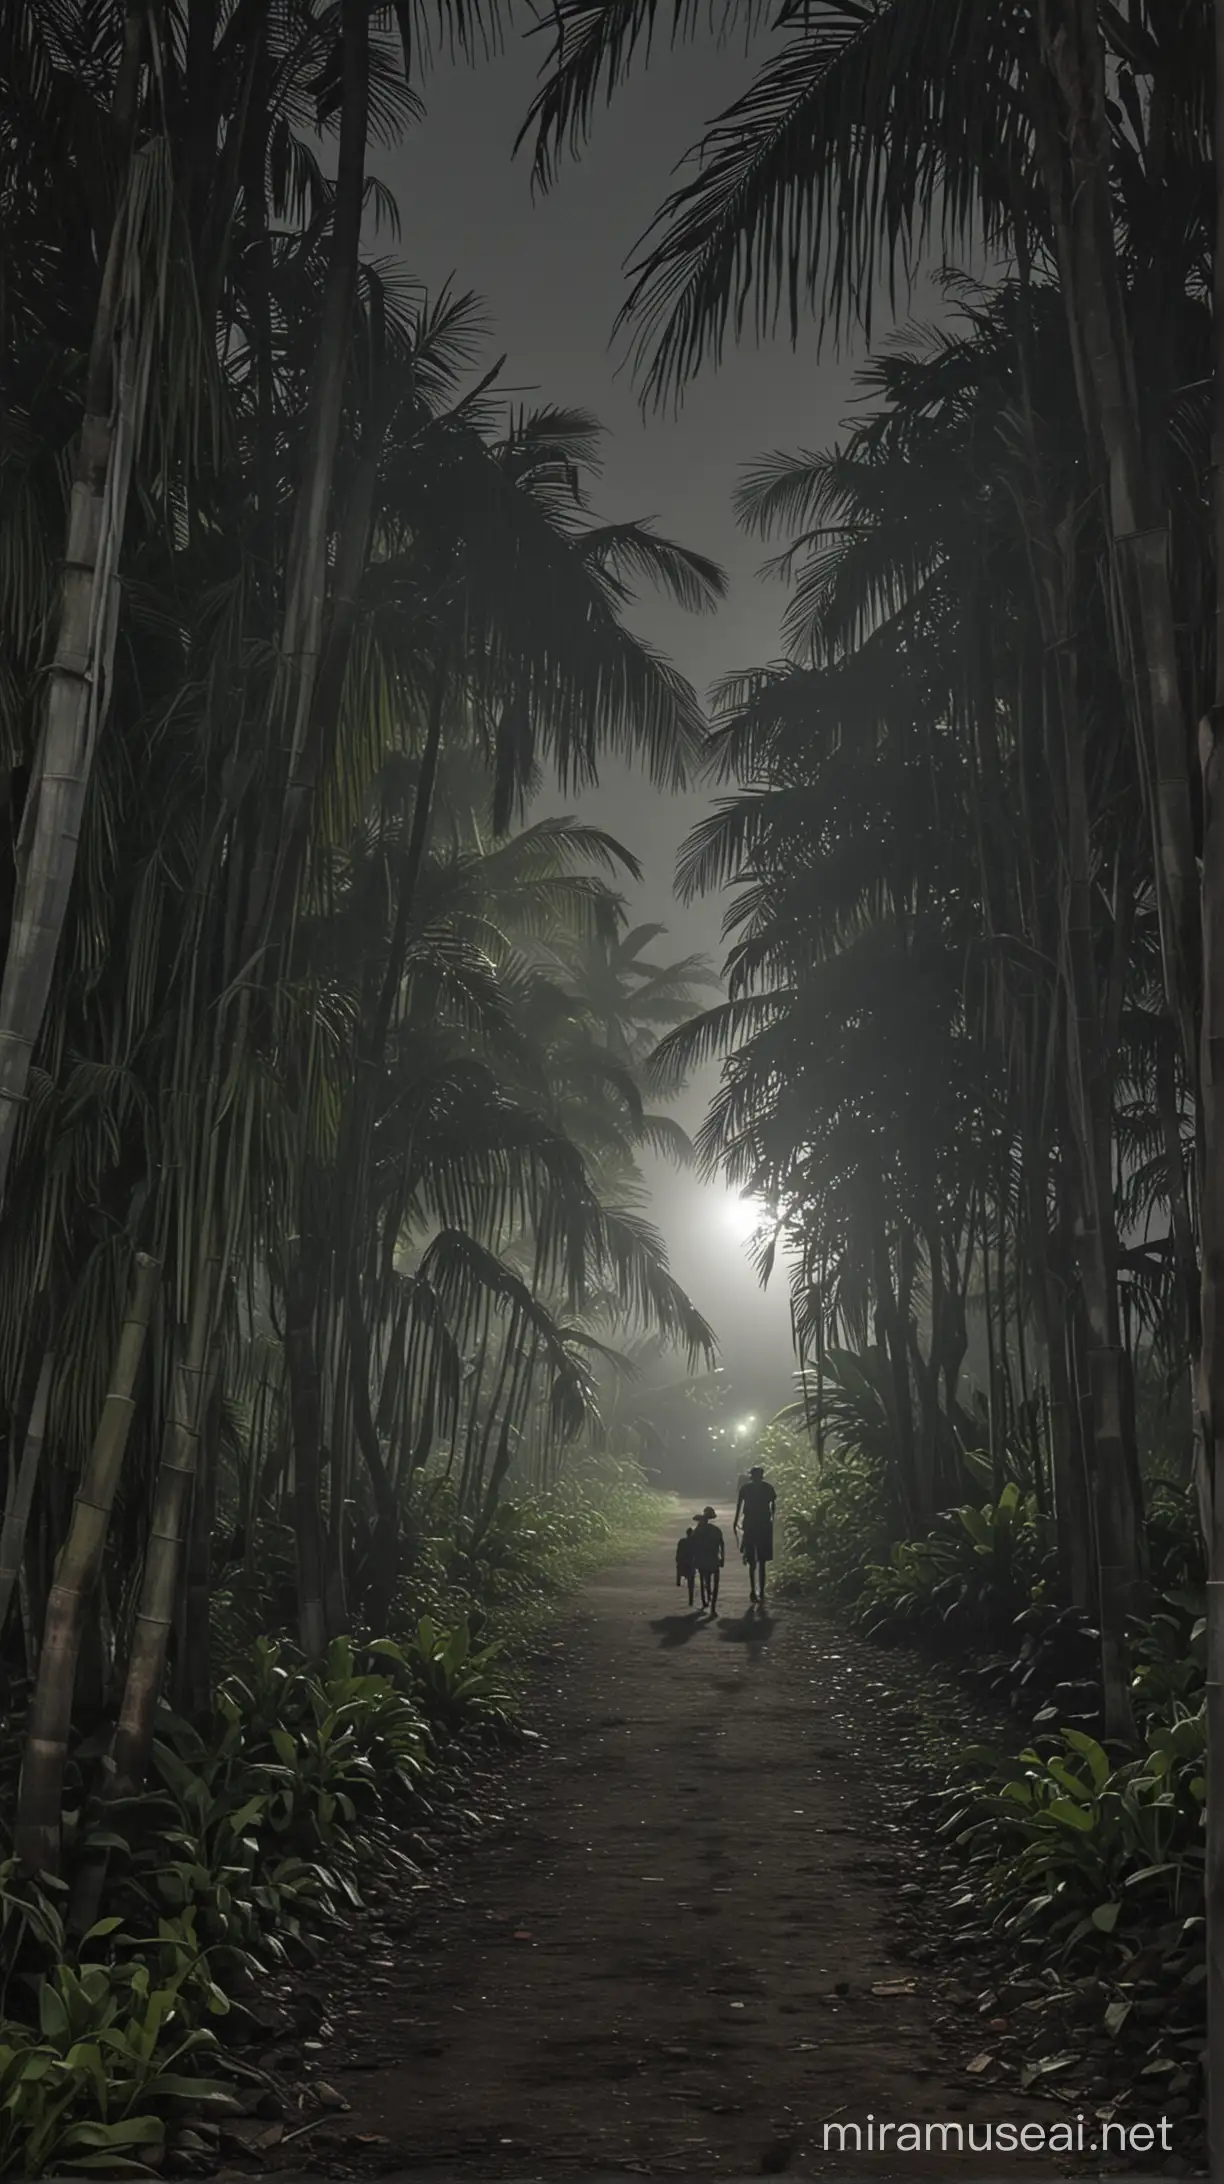 foto malam jalan di desa indonesia, pohon pisang, seram, sepi,
